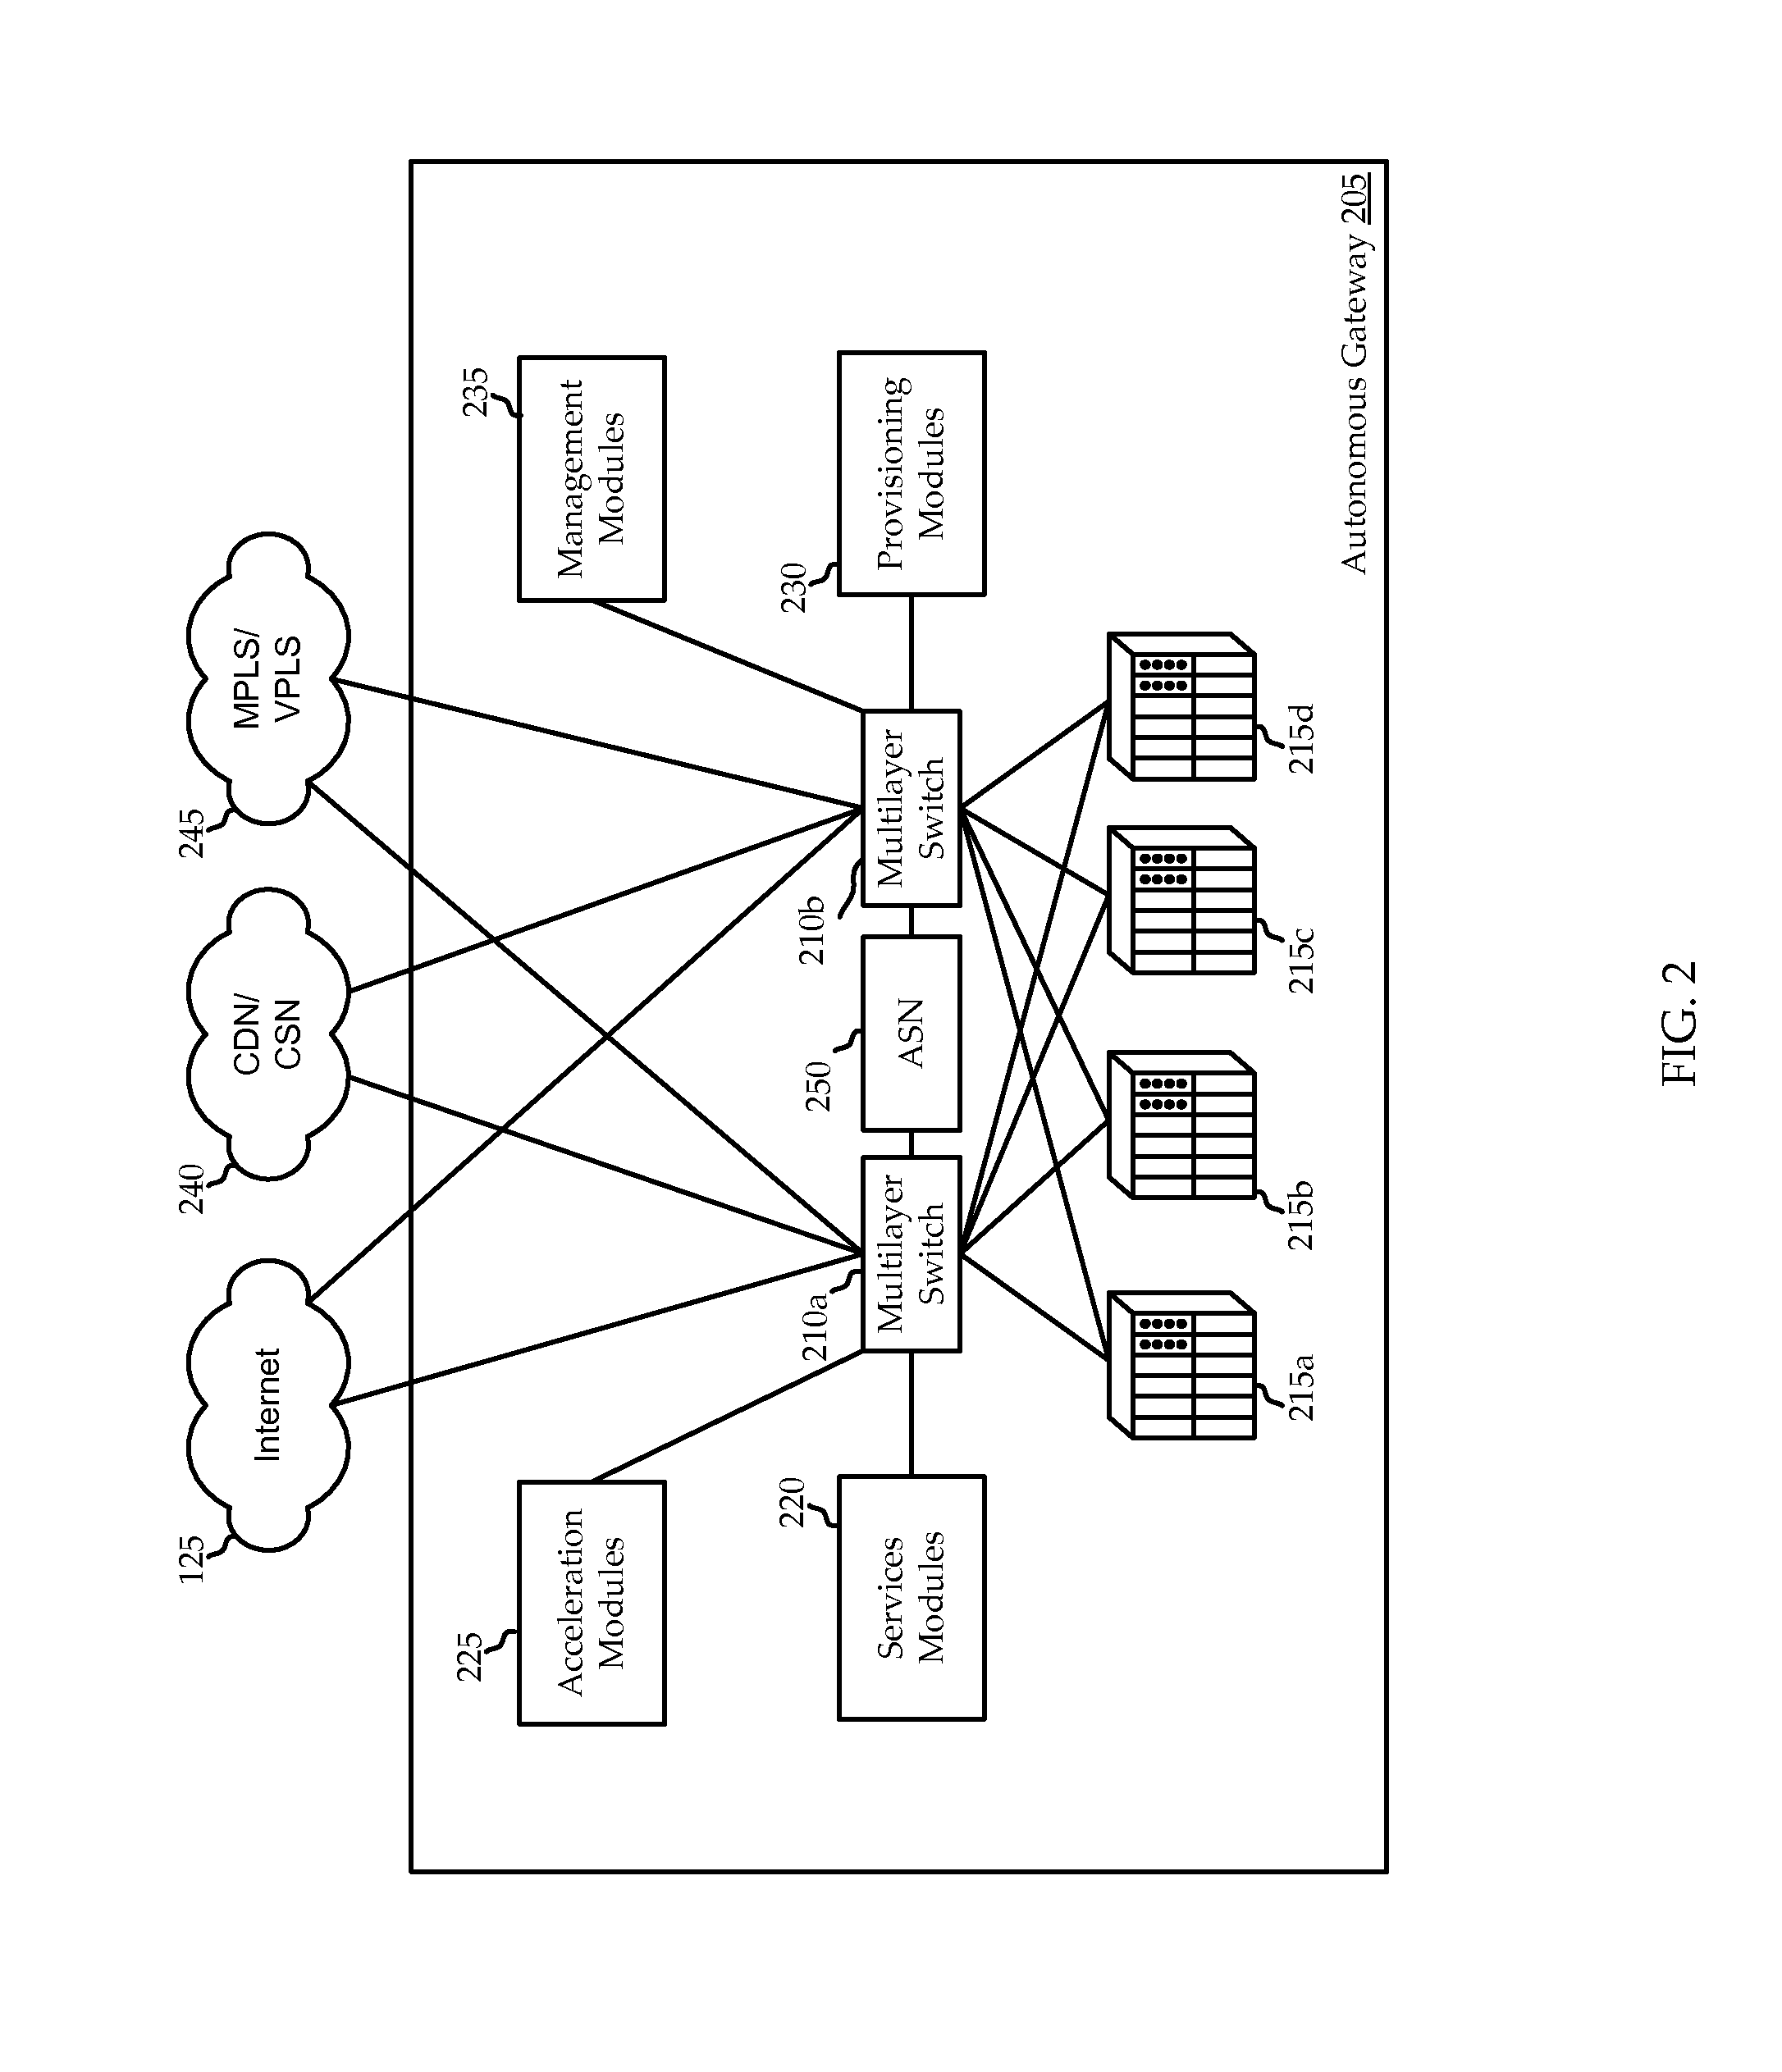 Core-based satellite network architecture